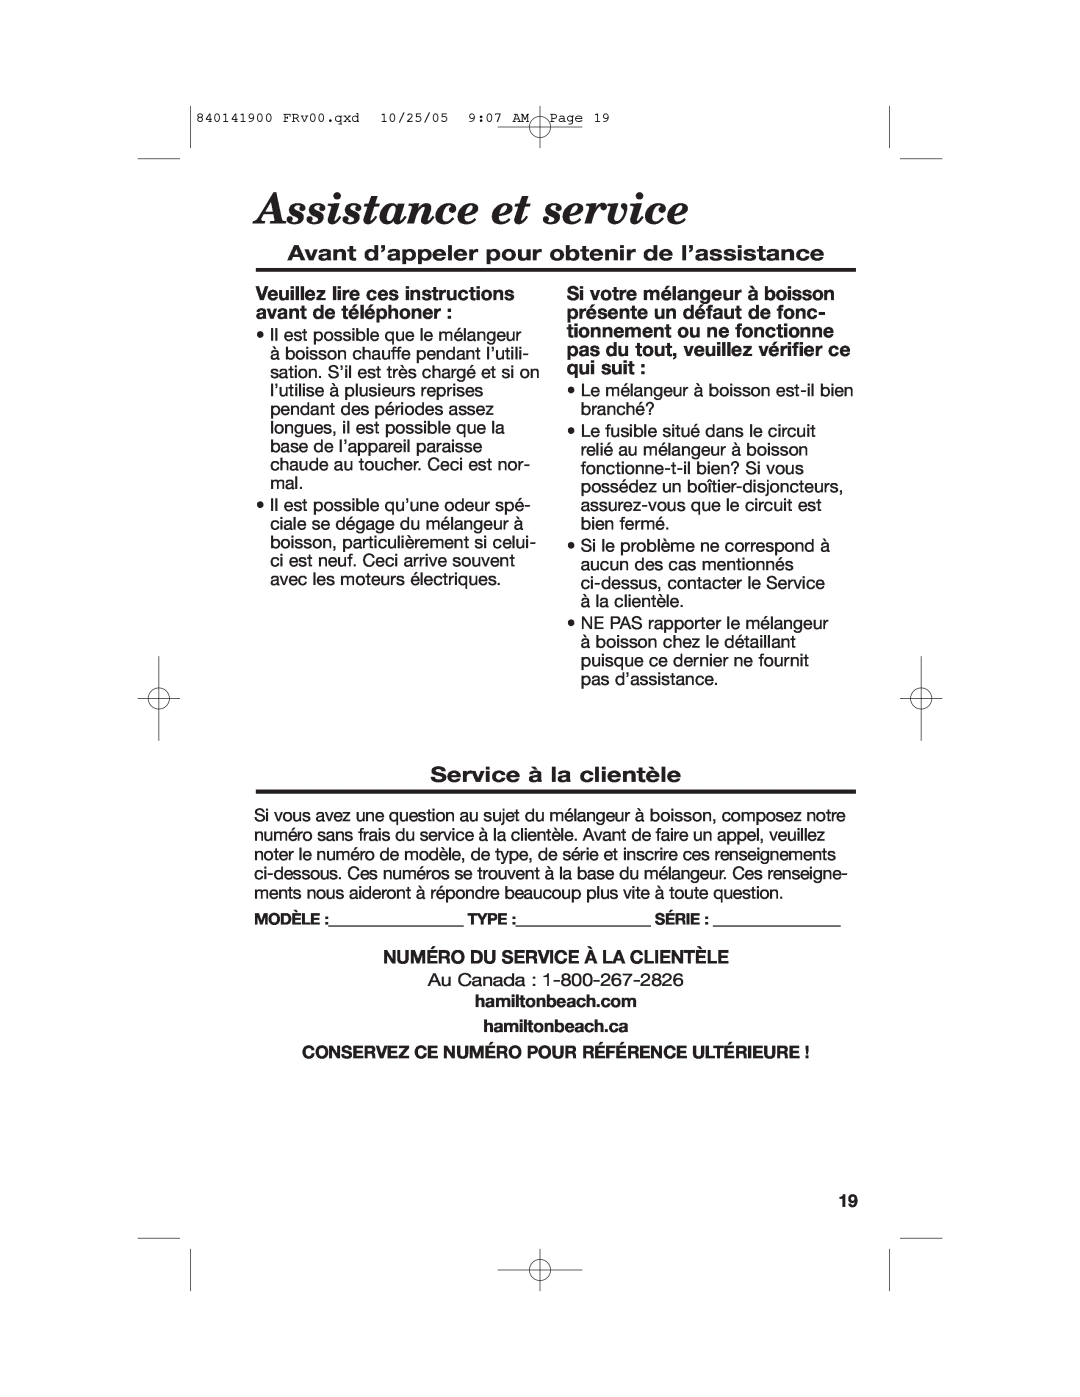 Hamilton Beach 840141900 manual Assistance et service, Avant d’appeler pour obtenir de l’assistance, Service à la clientèle 